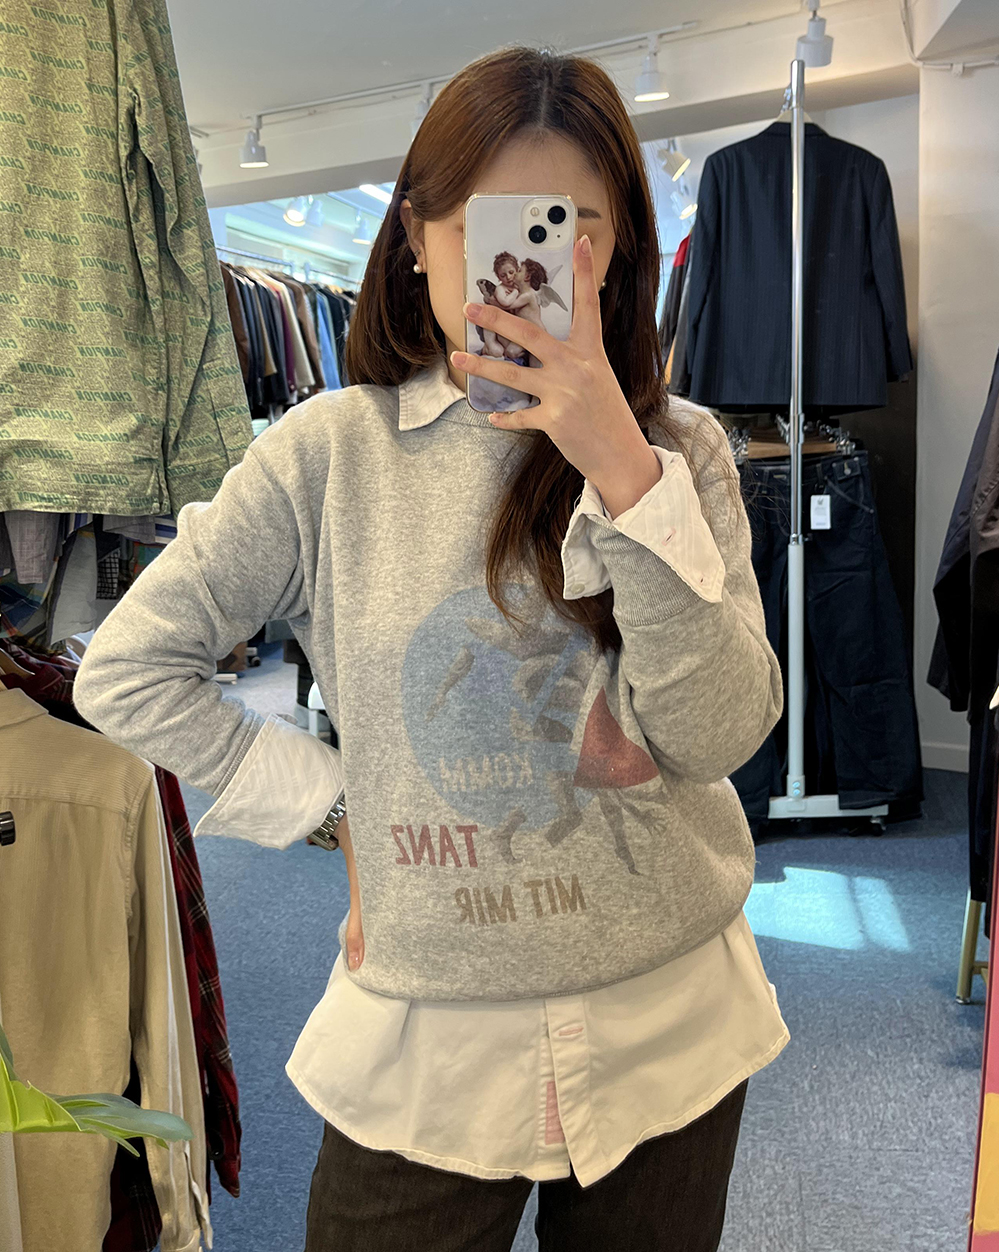 Daily_03,핫소스,빈티지쇼핑몰, 빈티지옷, 구제의류